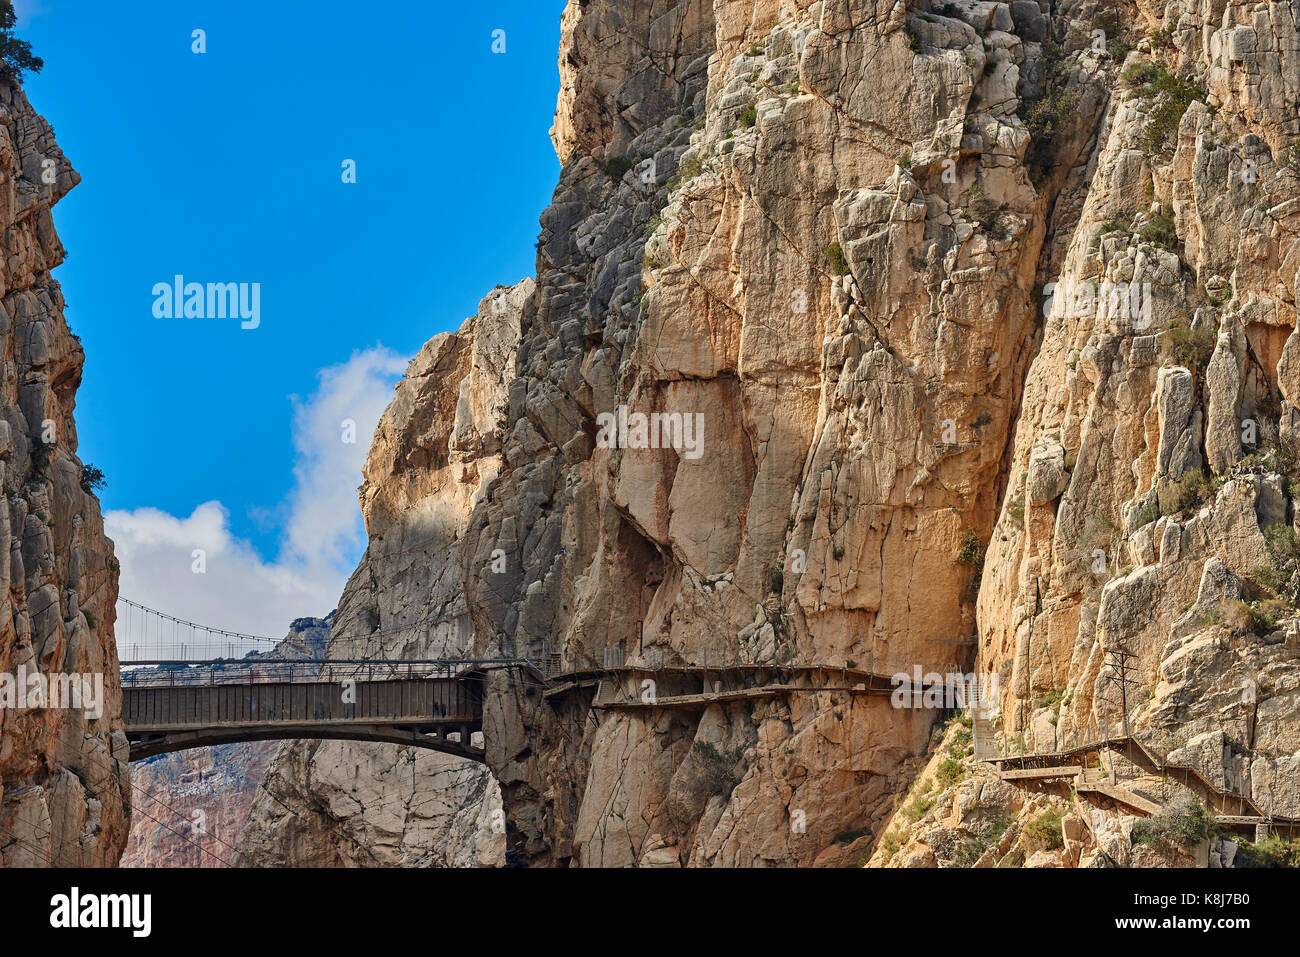 Desfiladero de lo Gaitanes. The Kings Pathway, Caminito del rey, El Chorro Gorges, Ardales, Malaga Province, Andalusia, Spain Stock Photo